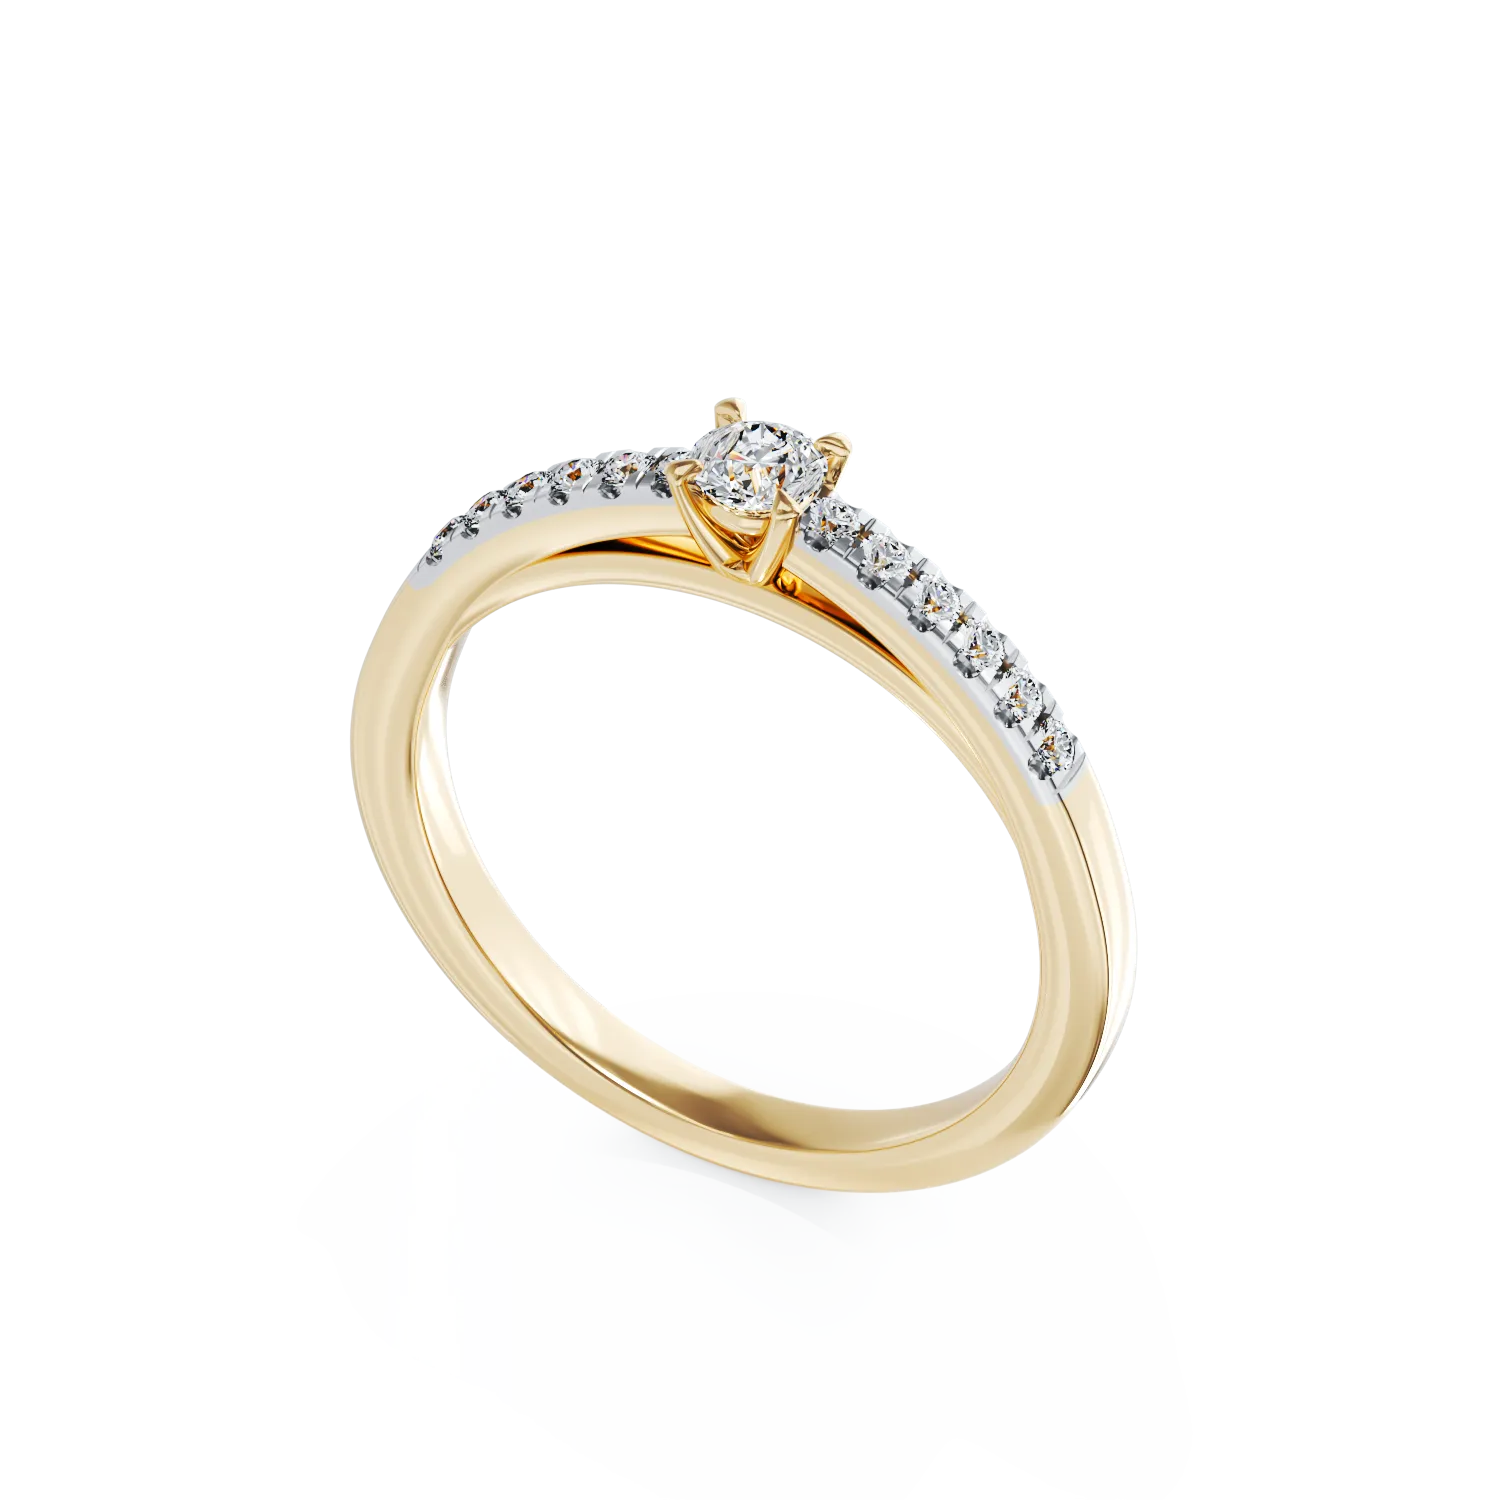 Eljegyzési gyűrű 18K-os sárga aranyból 0,26ct gyémánttal és 0,13ct gyémánttal. Gramm: 2,8